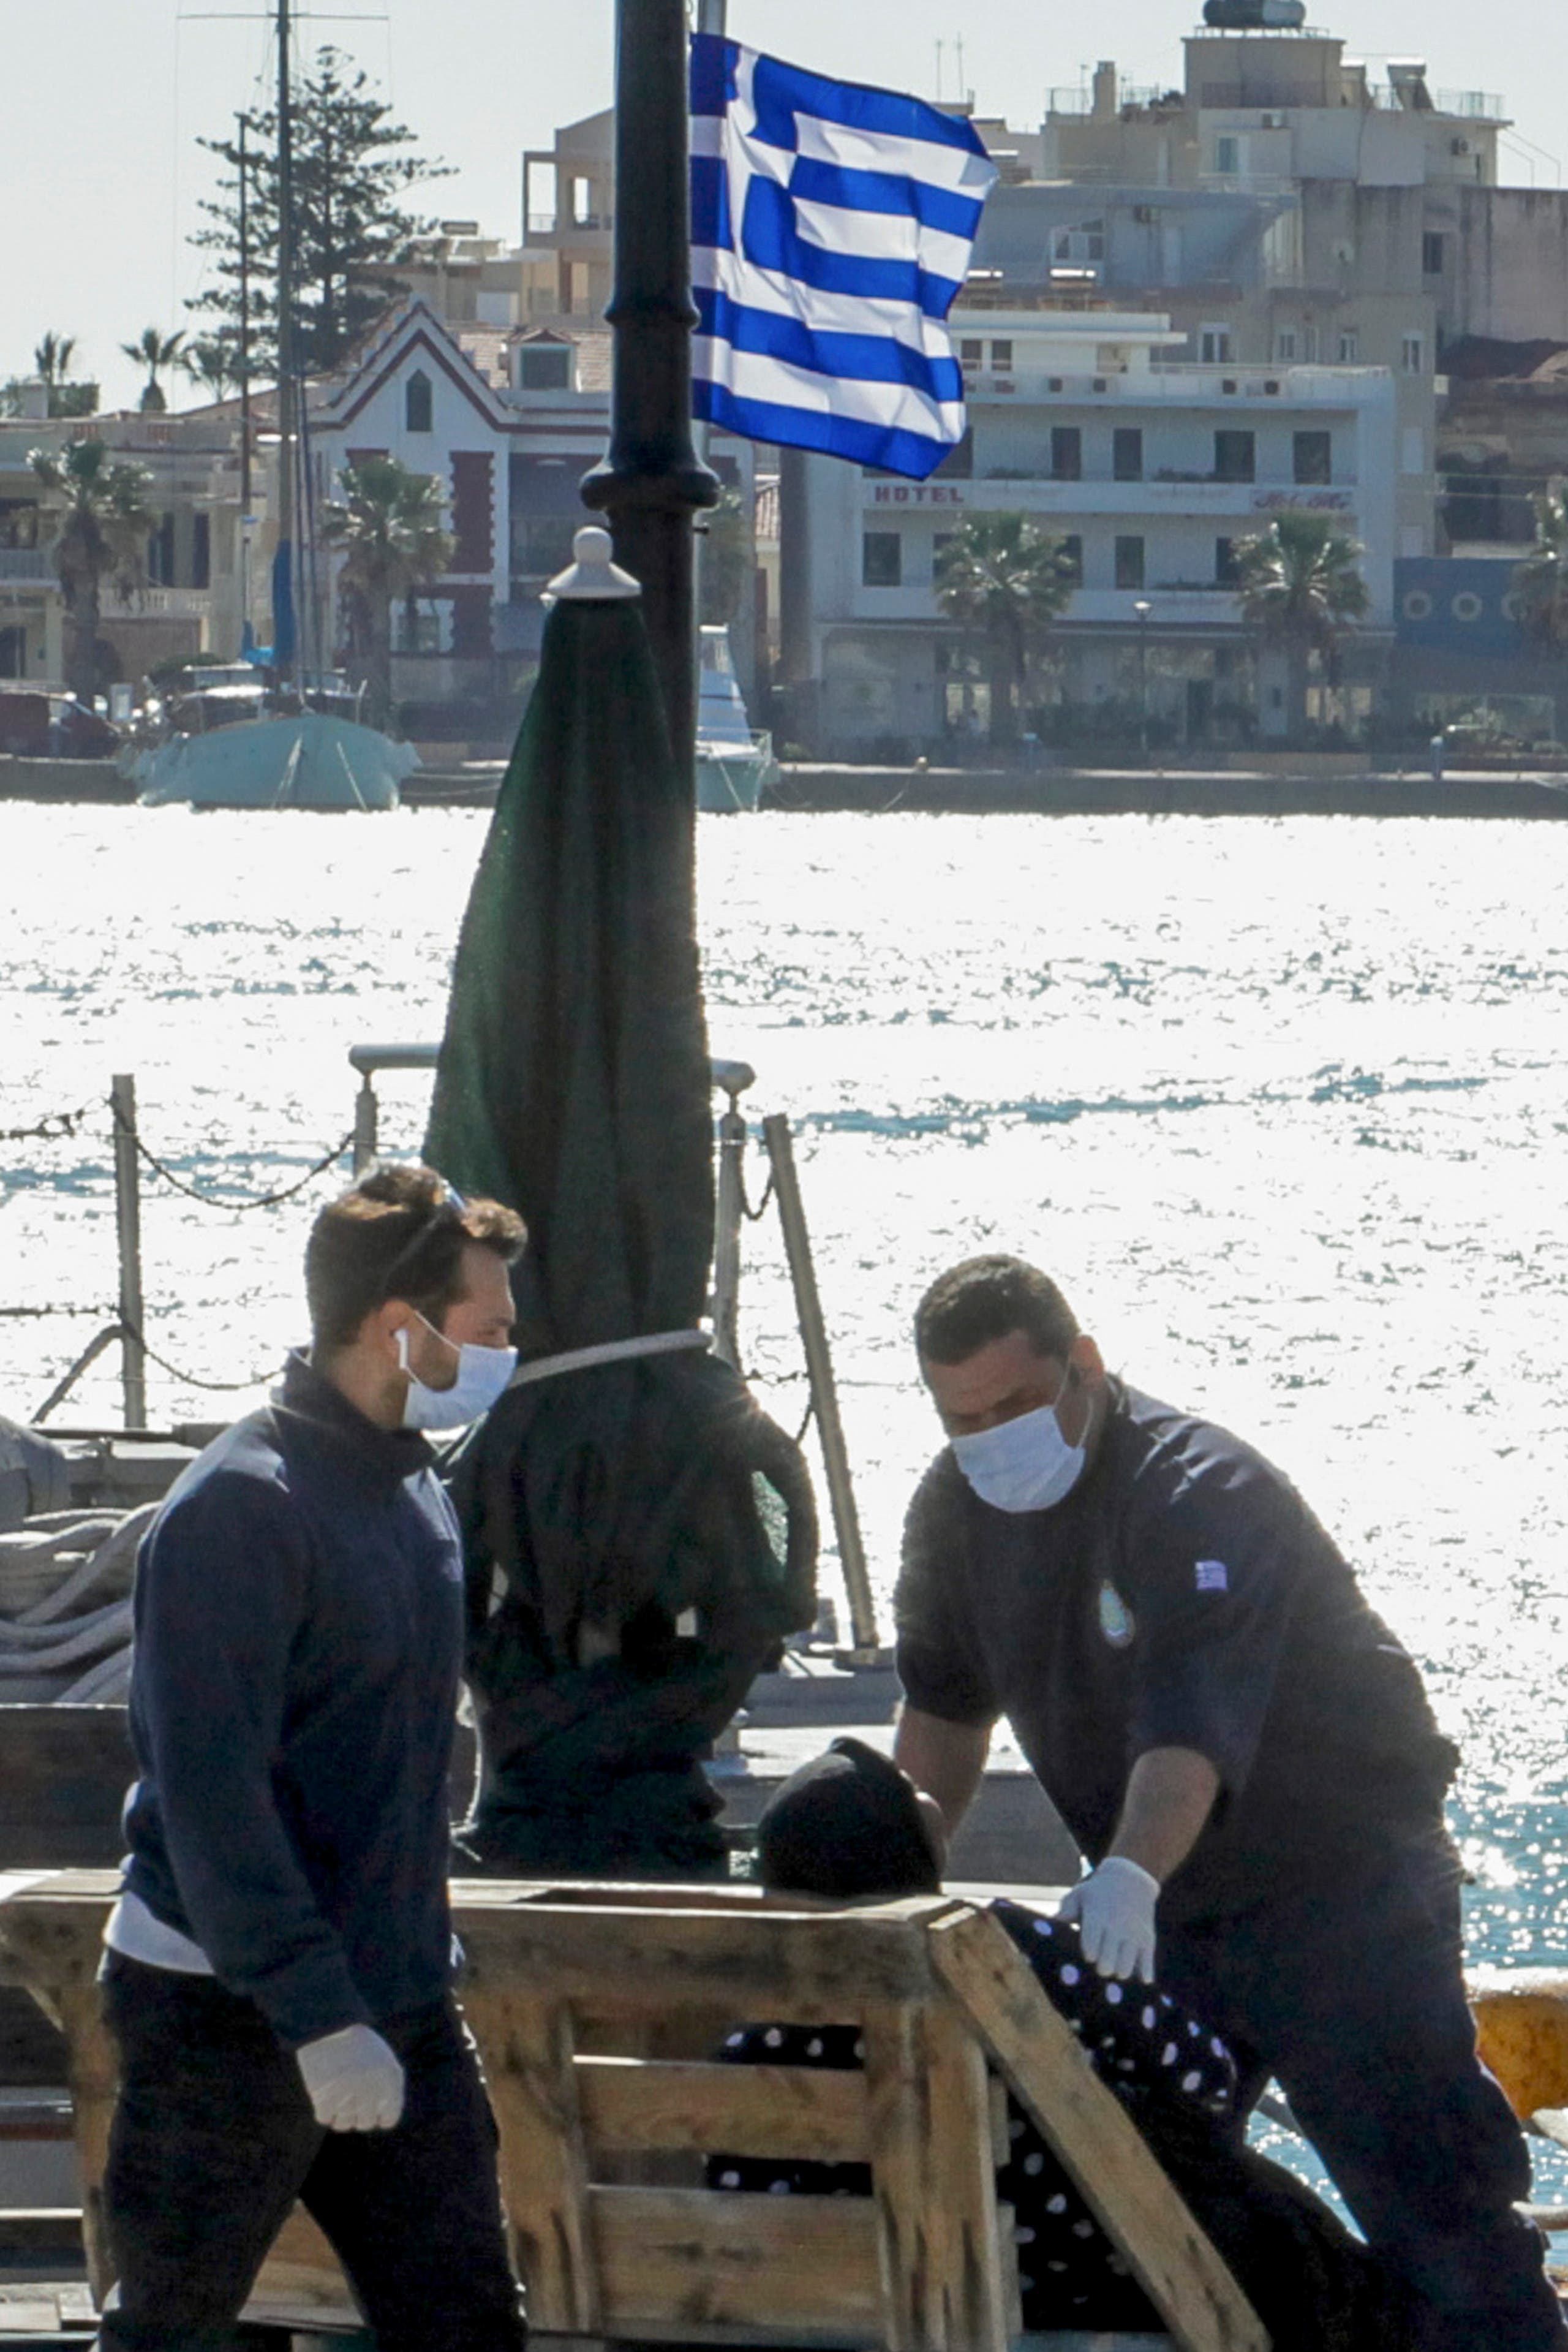 خفر السواحل اليوناني يساعد ناجية بعد وصولها إلى ميناء خيوس